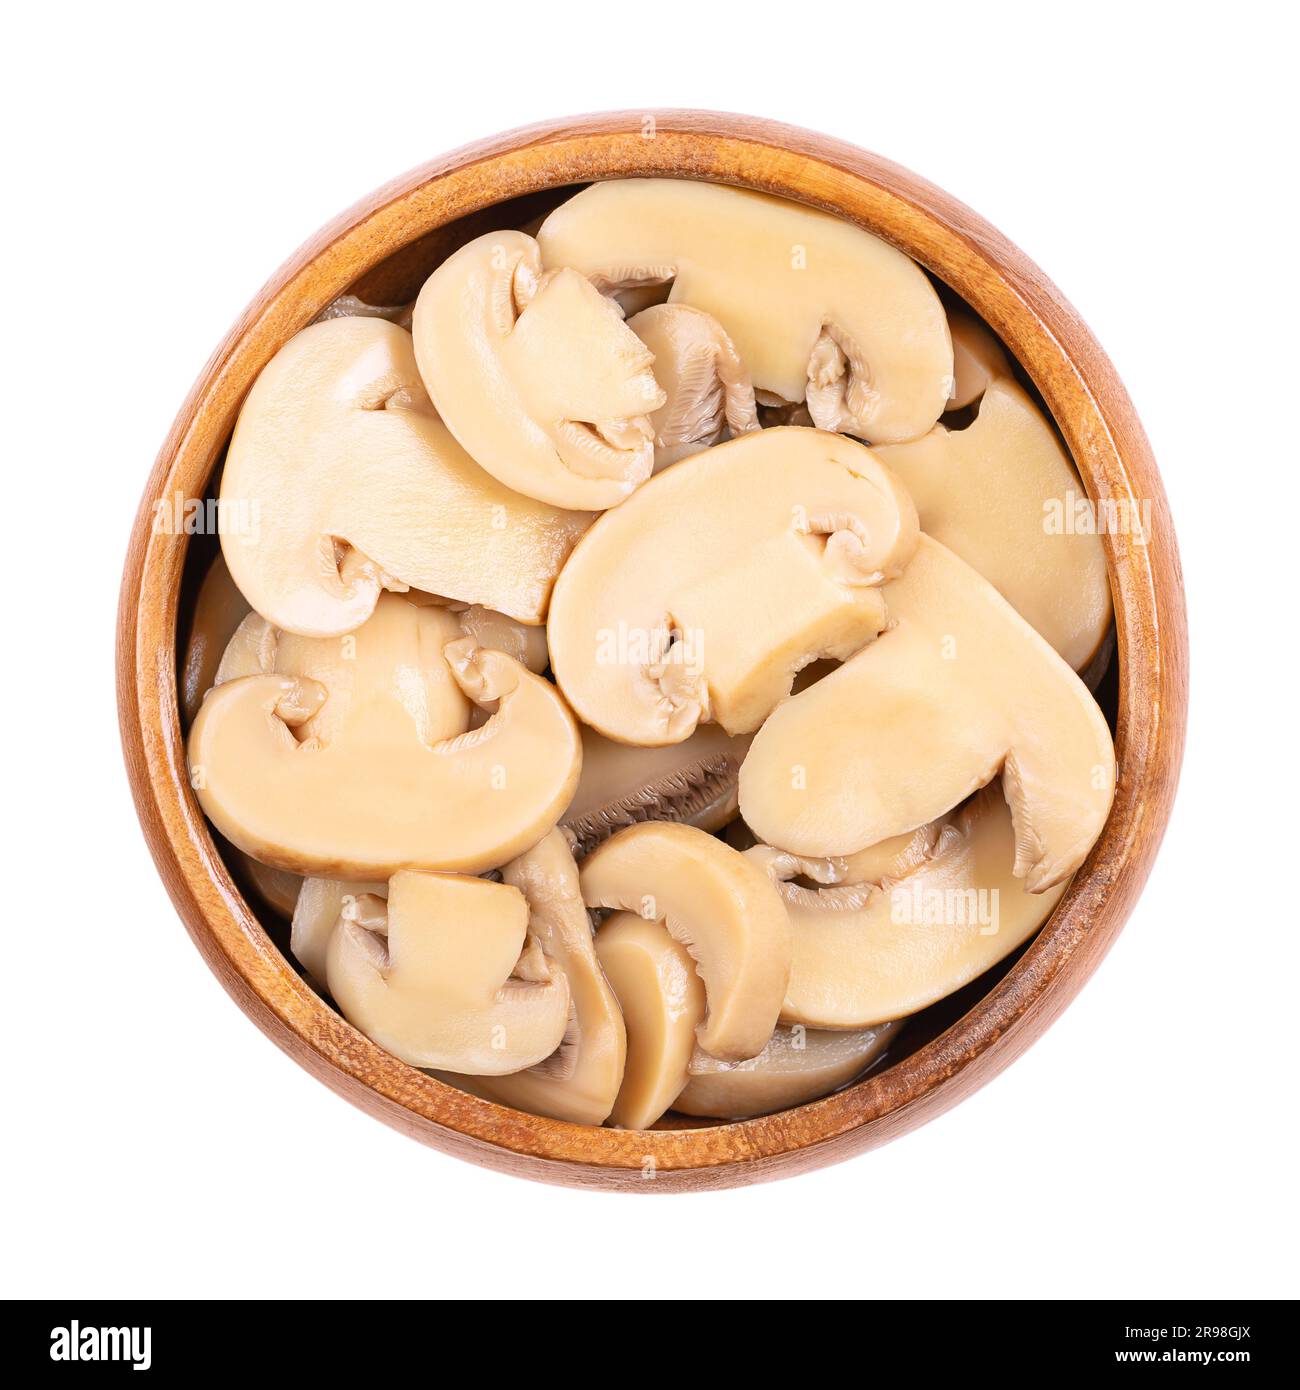 In Dosen geschnittene Champignon-Pilze in einer Holzschüssel. Agaricus bisporus, auch bekannt als gewöhnlicher, Button-, Kulturpilz oder Tafelpilz. Stockfoto